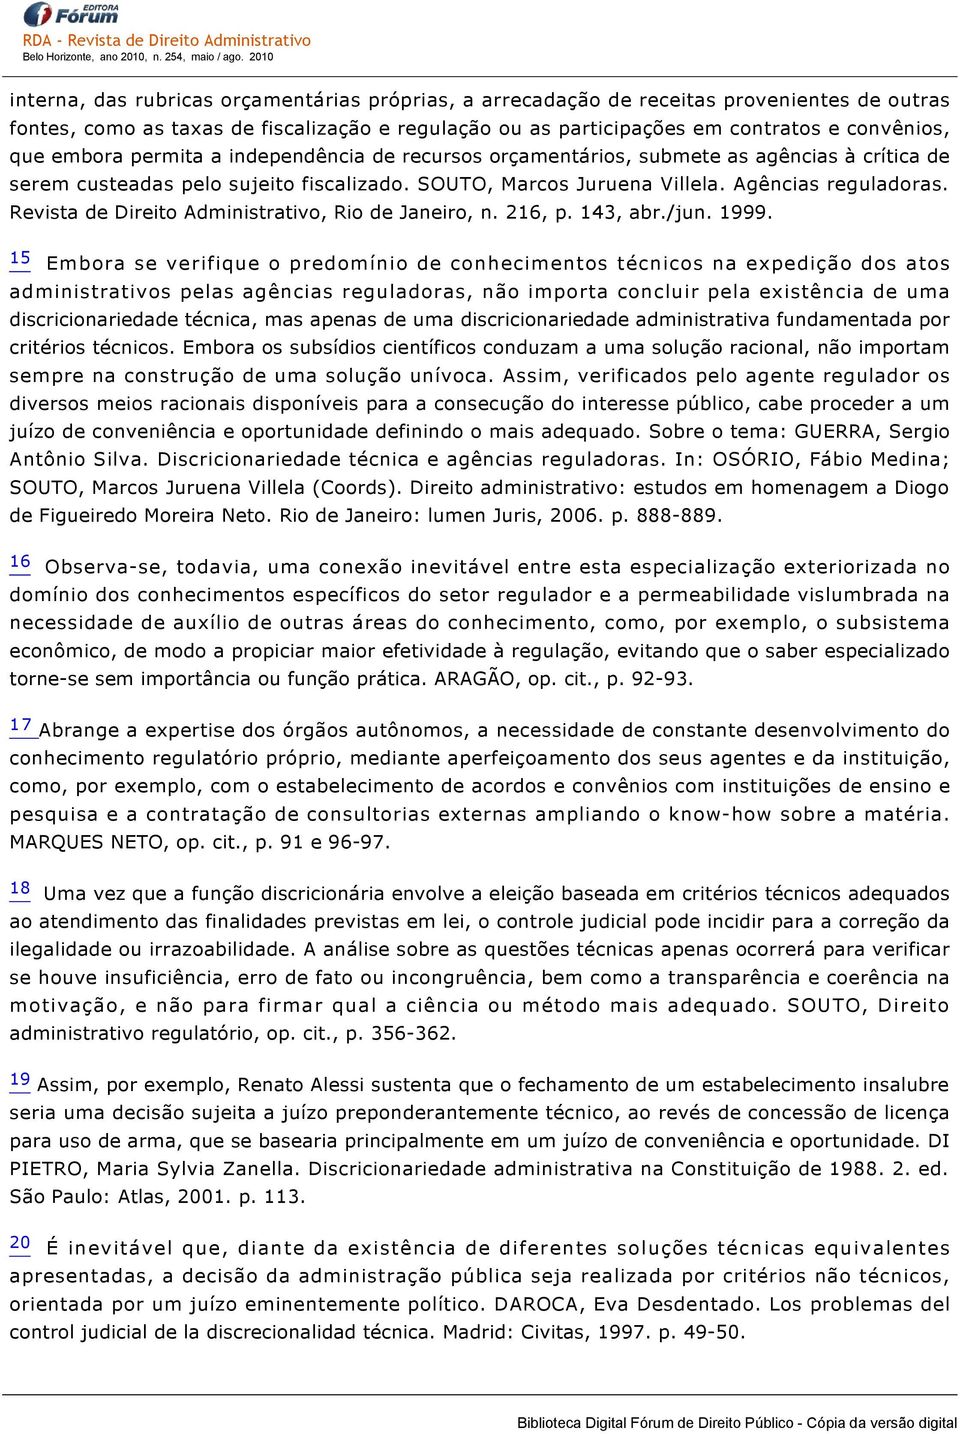 Revista de Direito Administrativo, Rio de Janeiro, n. 216, p. 143, abr./jun. 1999.